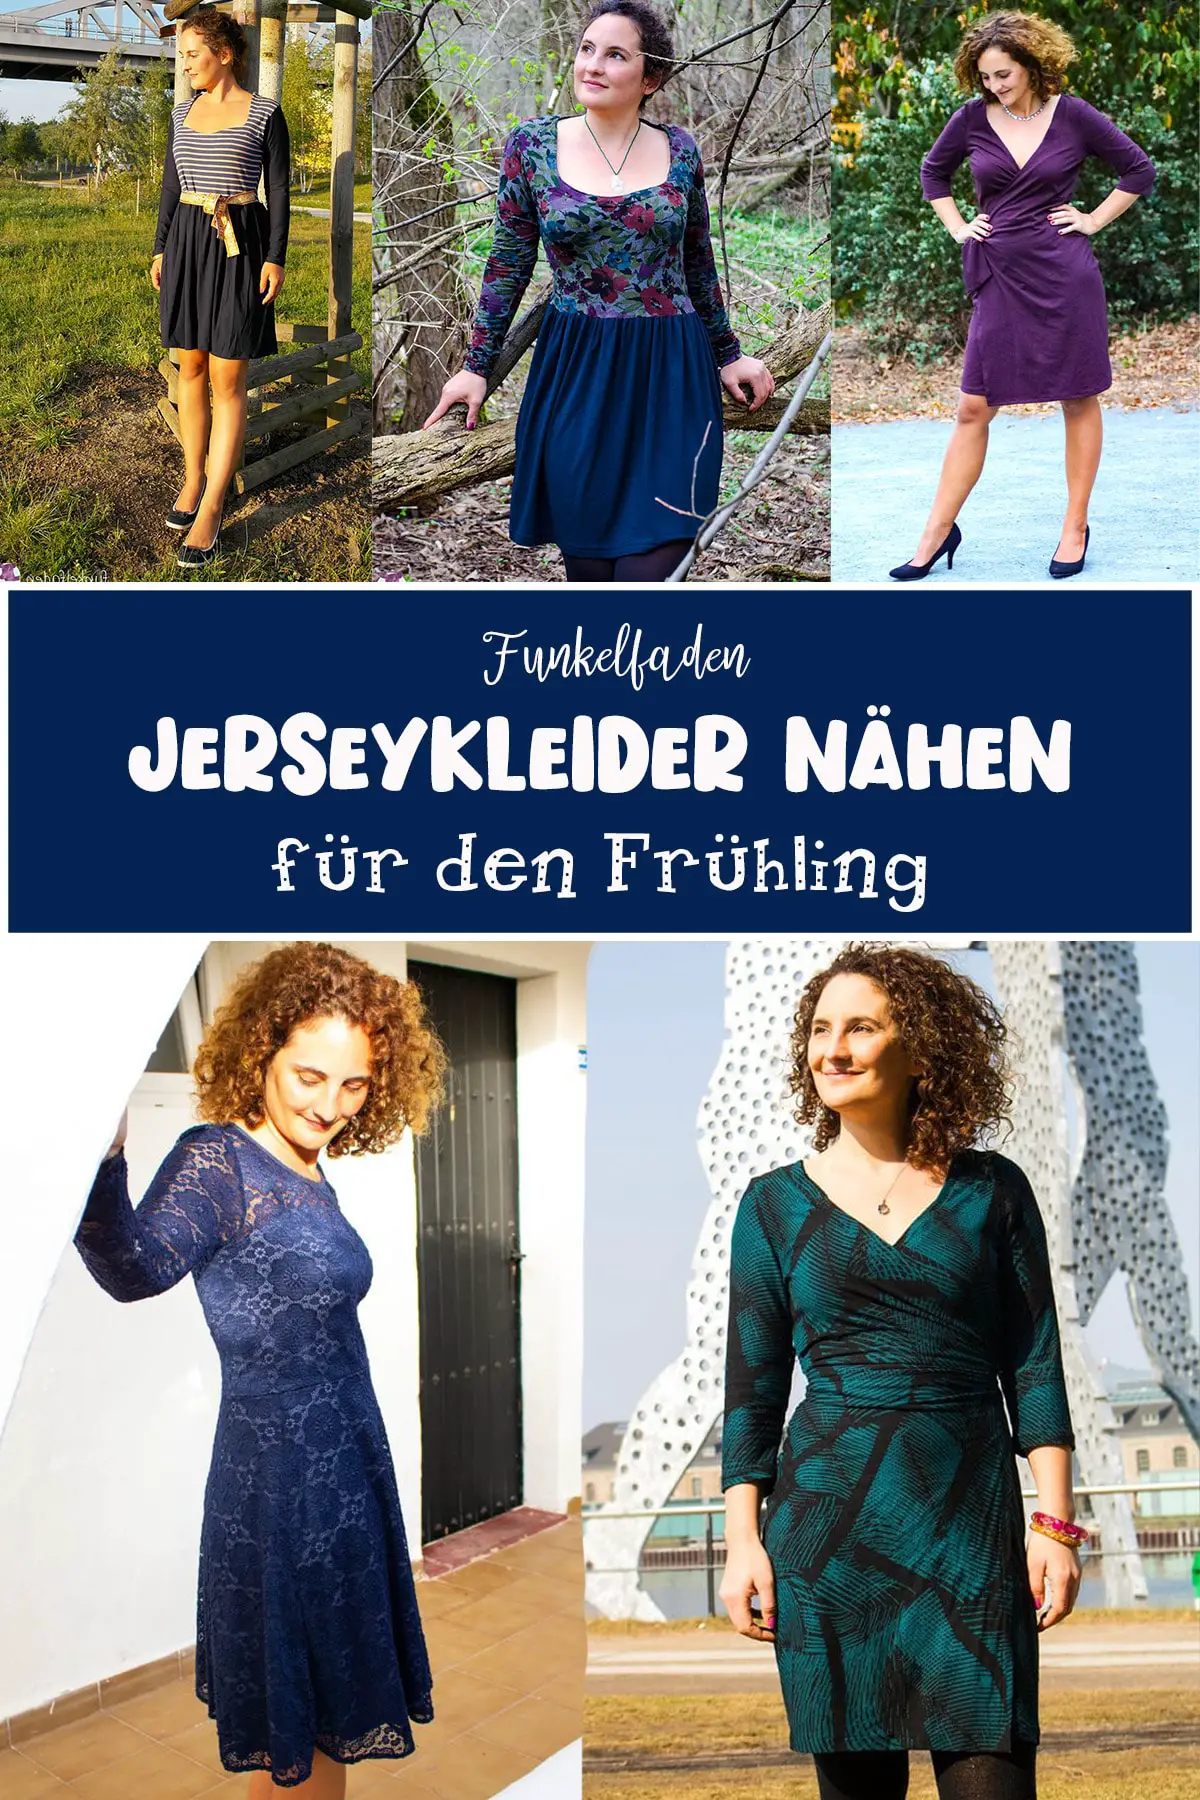 Jerseykleider nähen für den Frühling - Die schönsten Schnittmuster für Frauen